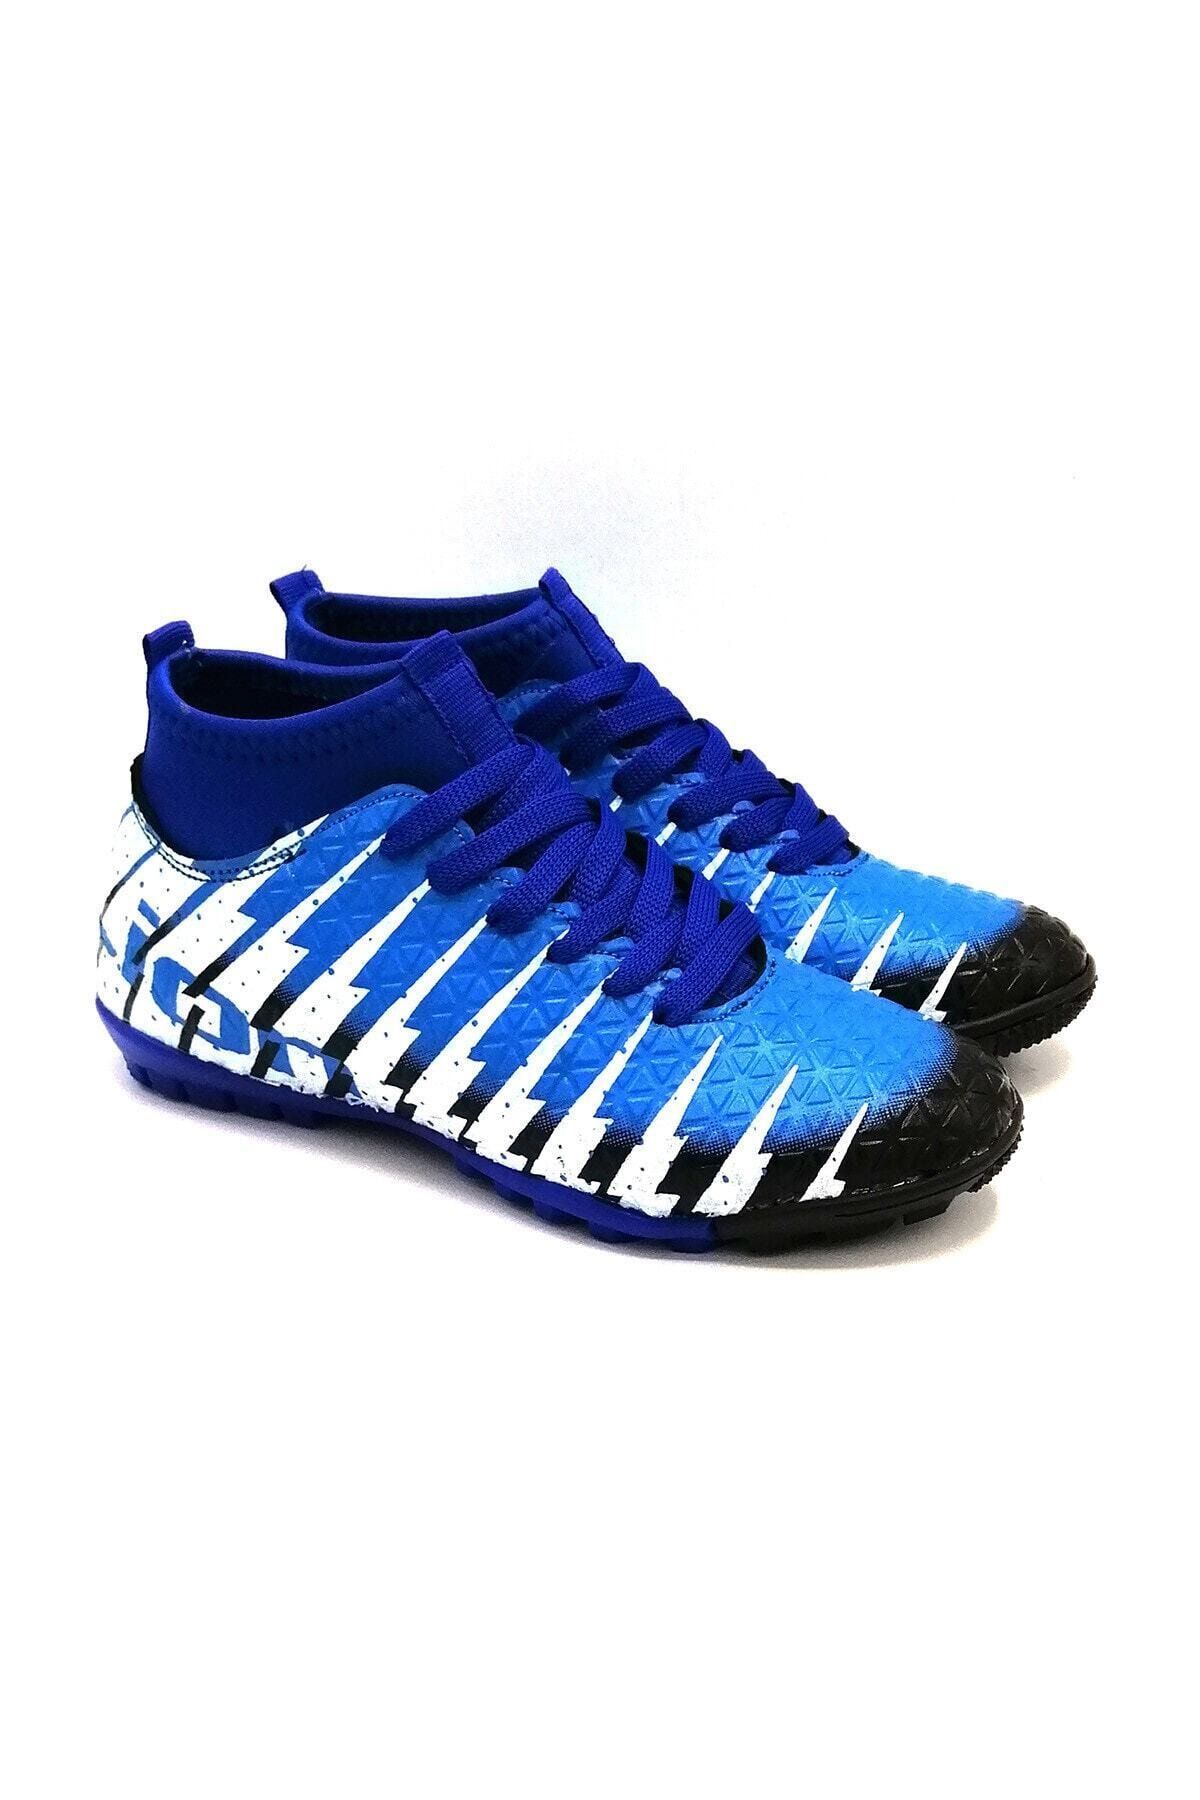 Lion Erkek Siyah Sax Çoraplı Halısaha Futbol Ayakkabısı 1453 Mavi